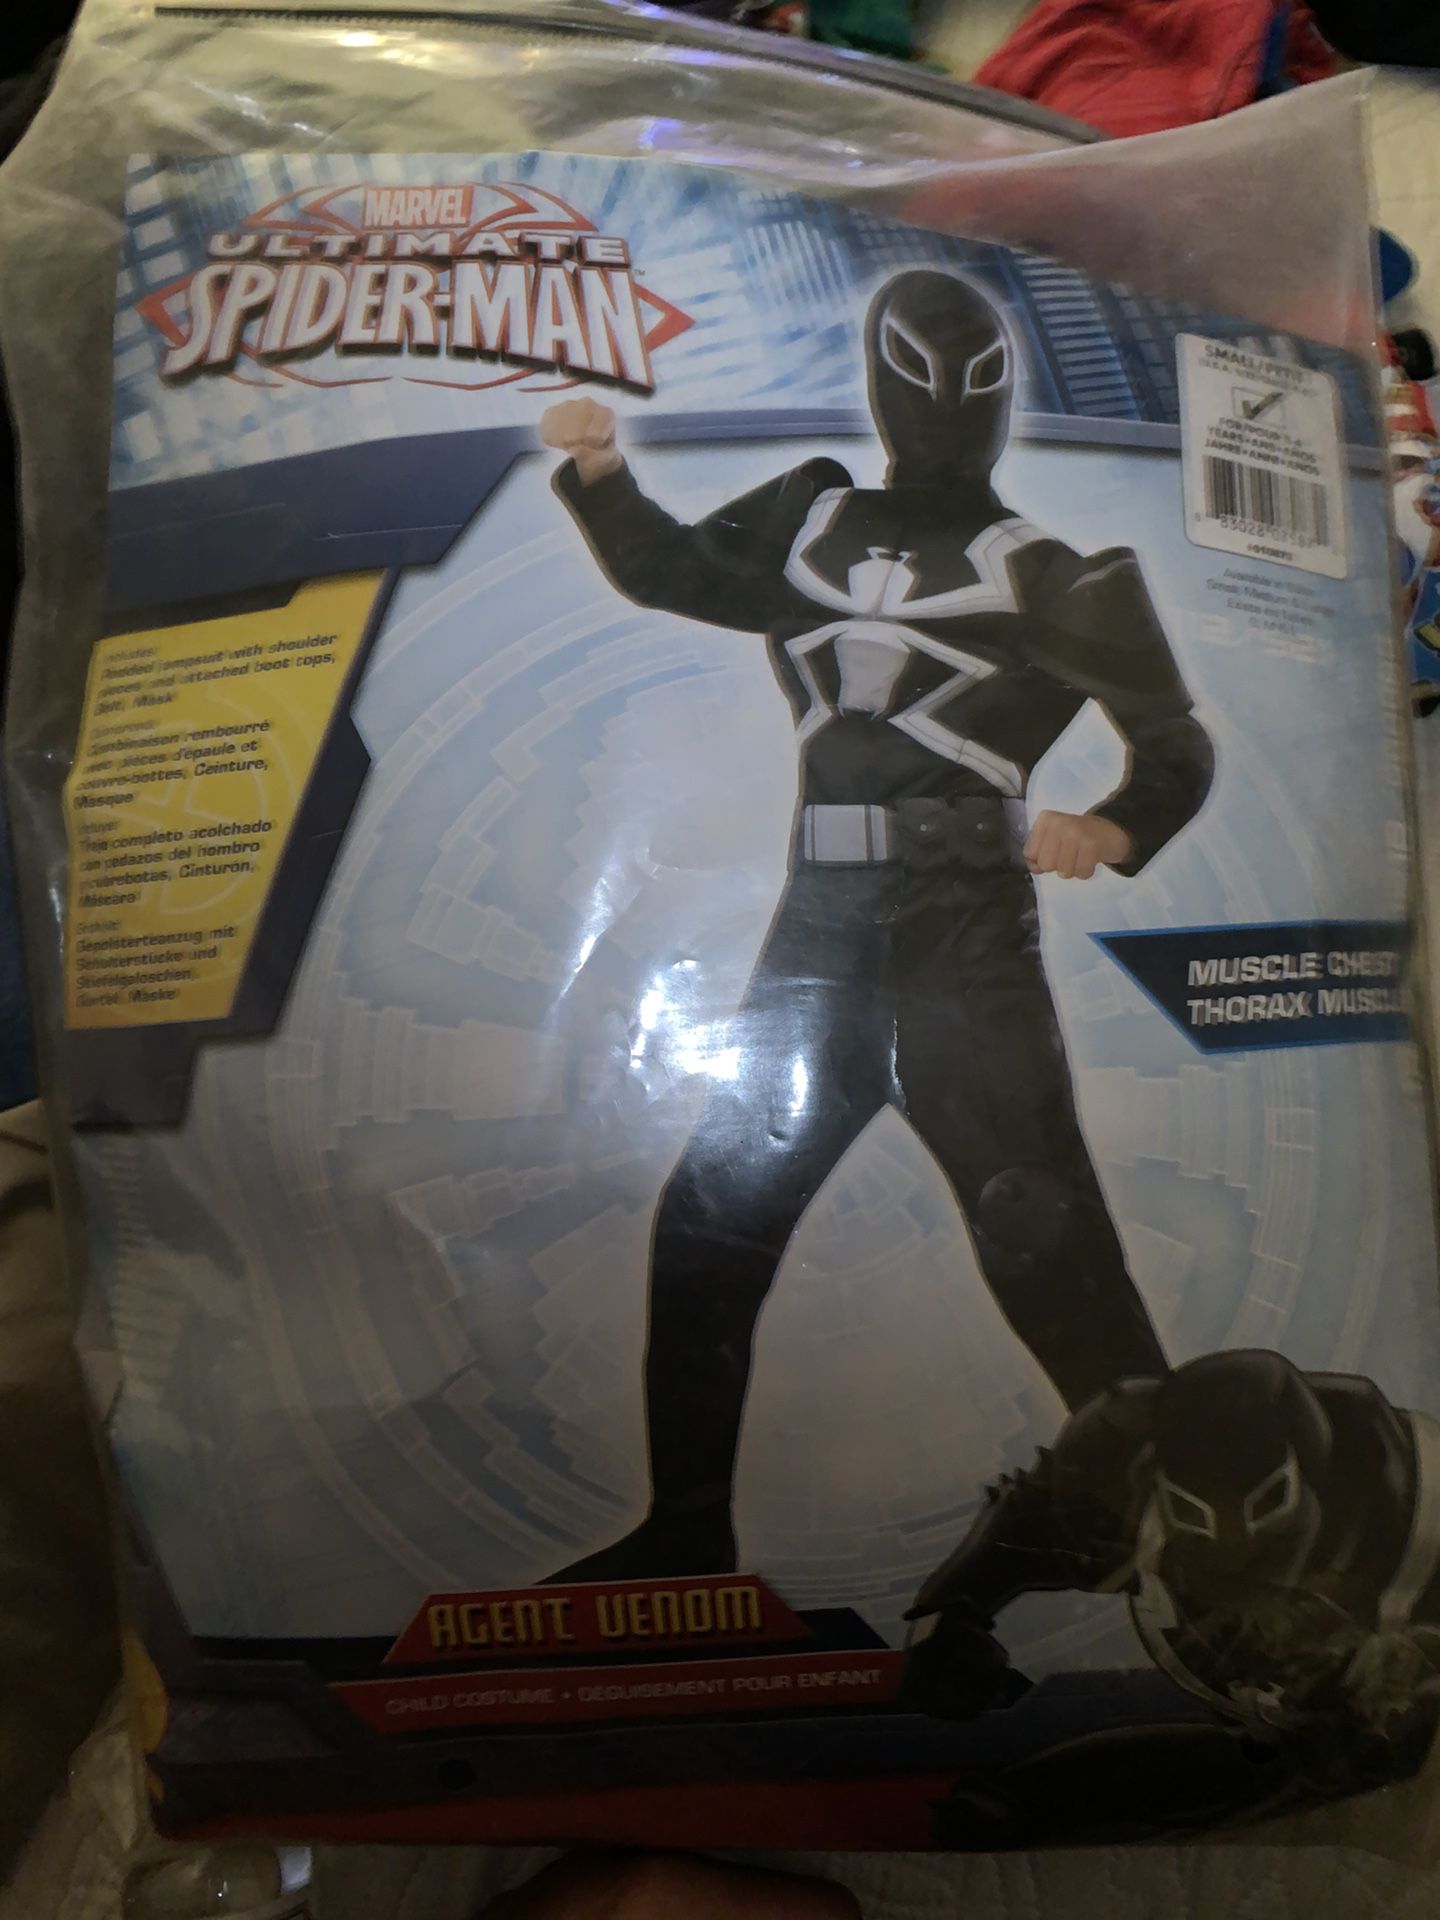 Agent Venom Costume 